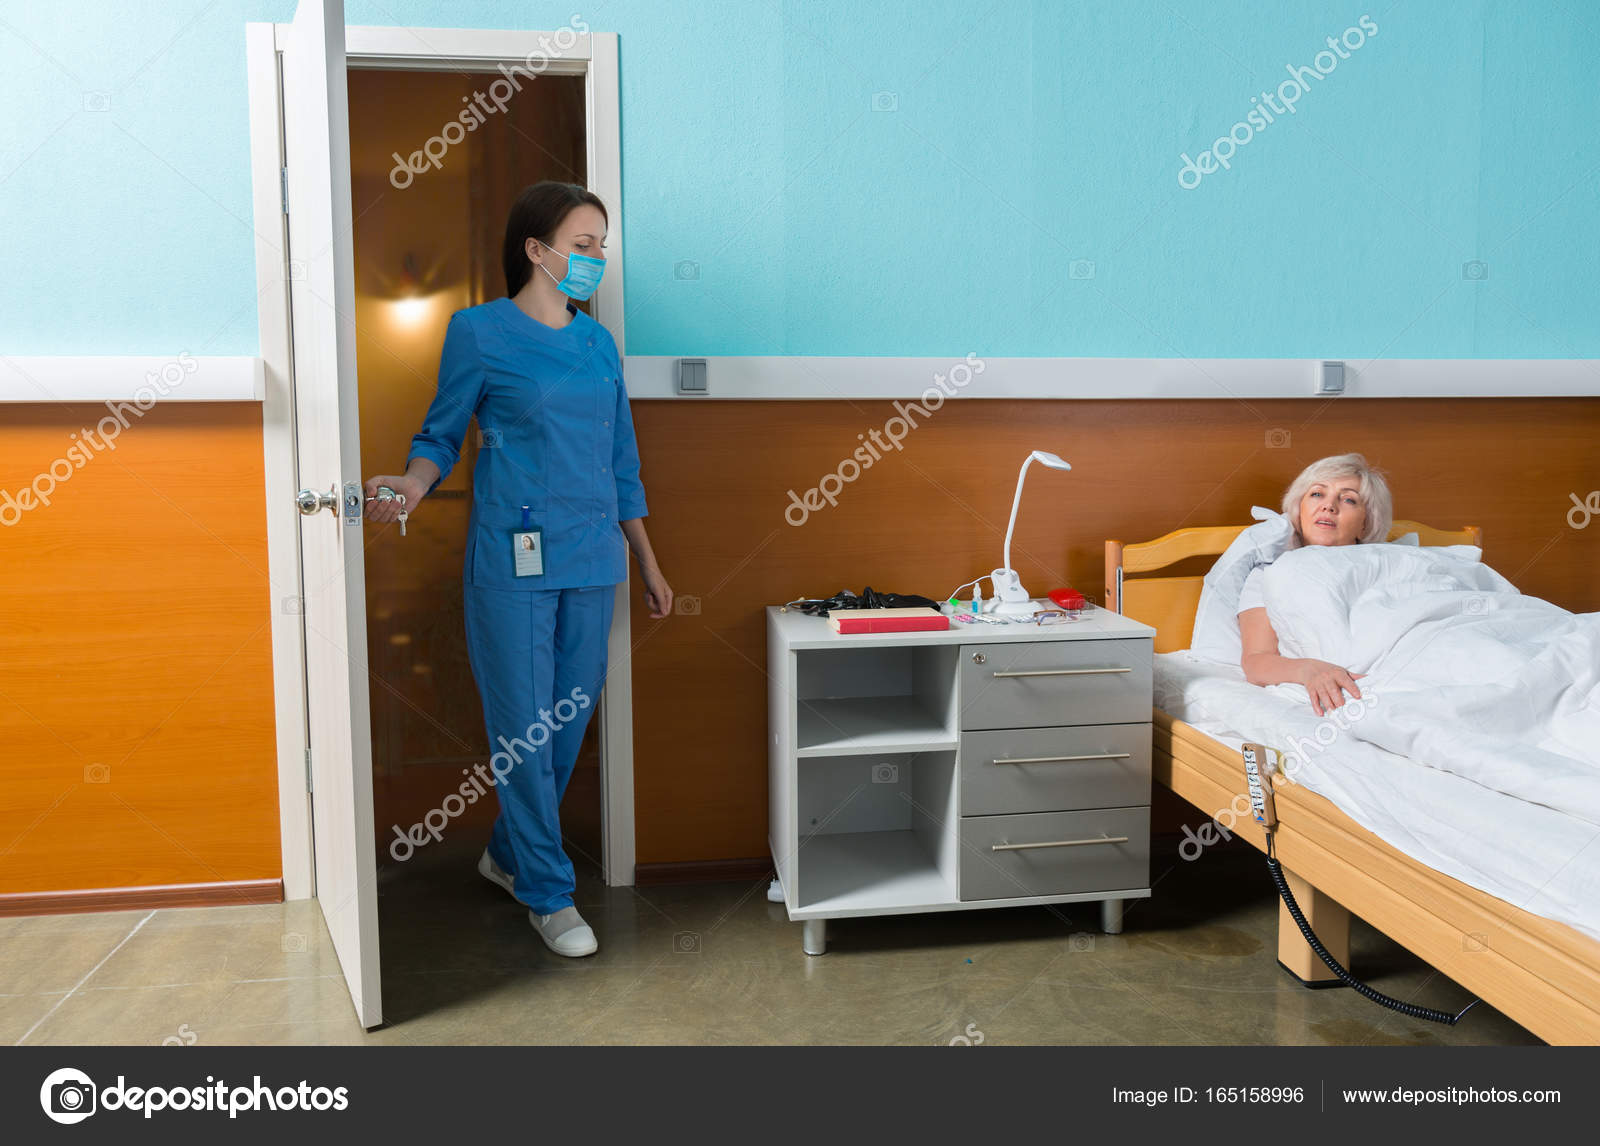 Пациент в палате жарит медсестру с волосатым лобком прямо на койке